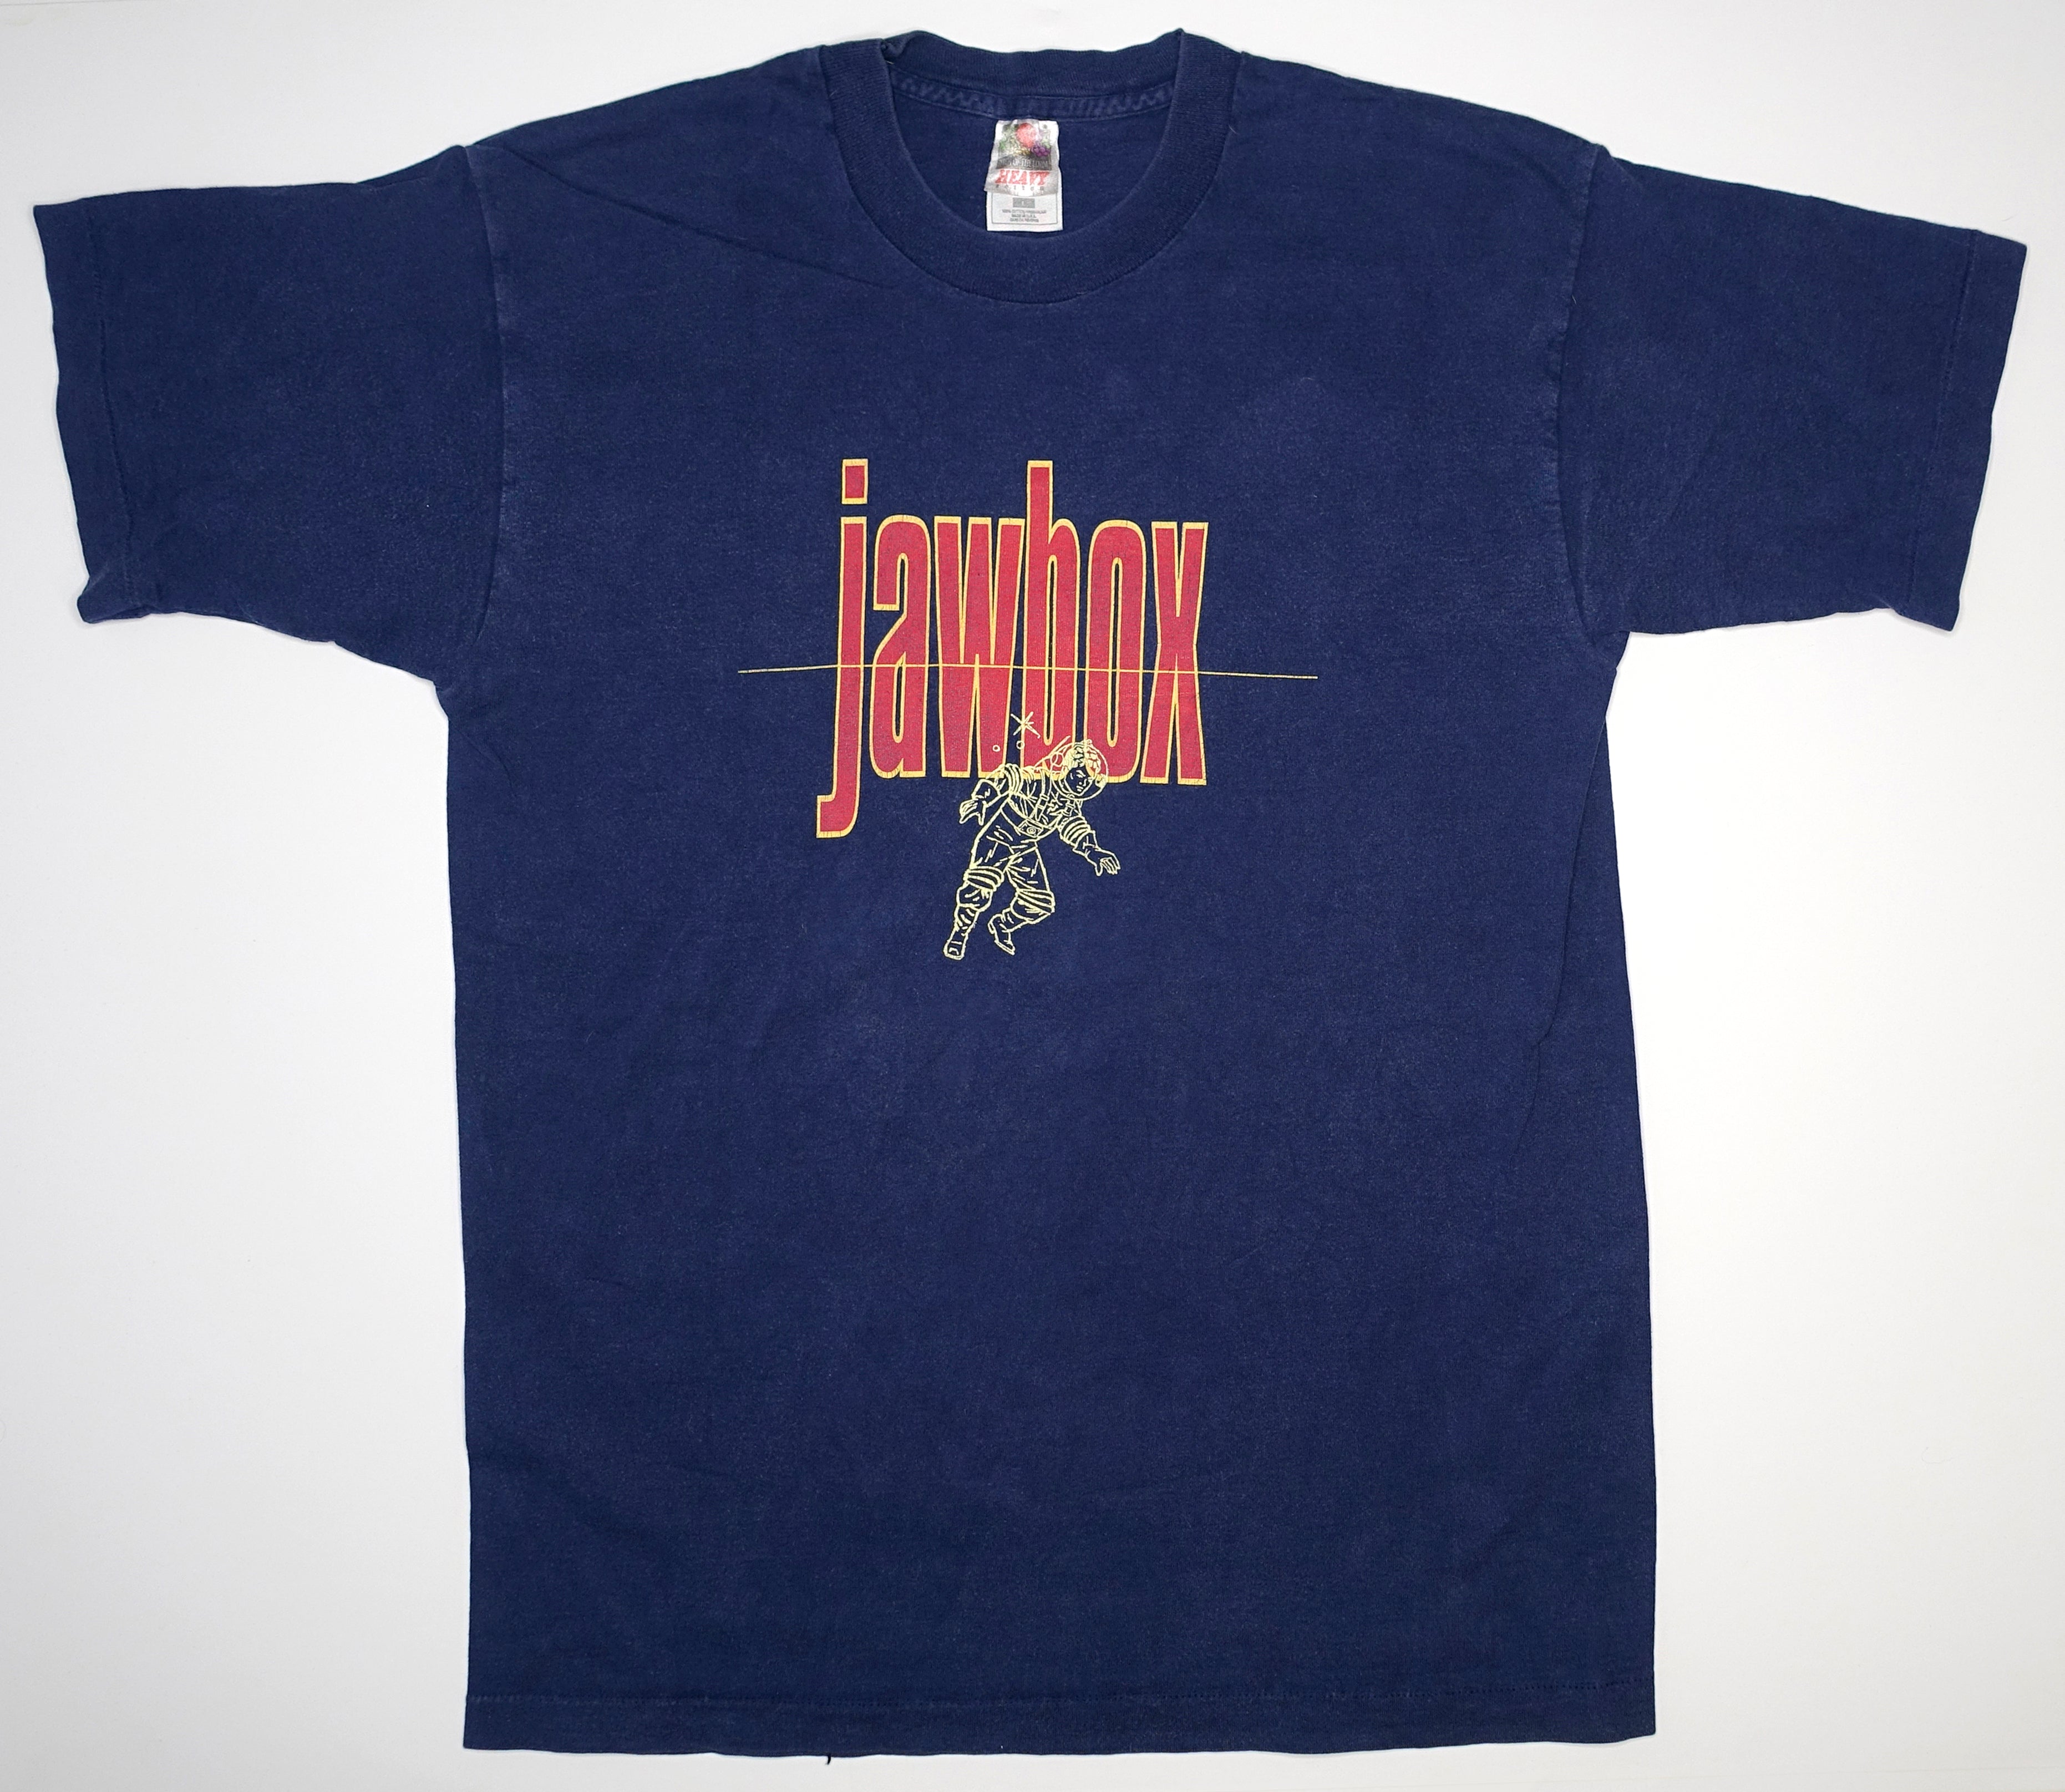 Jawbox - Spaceman 1994 Tour Shirt Size Large